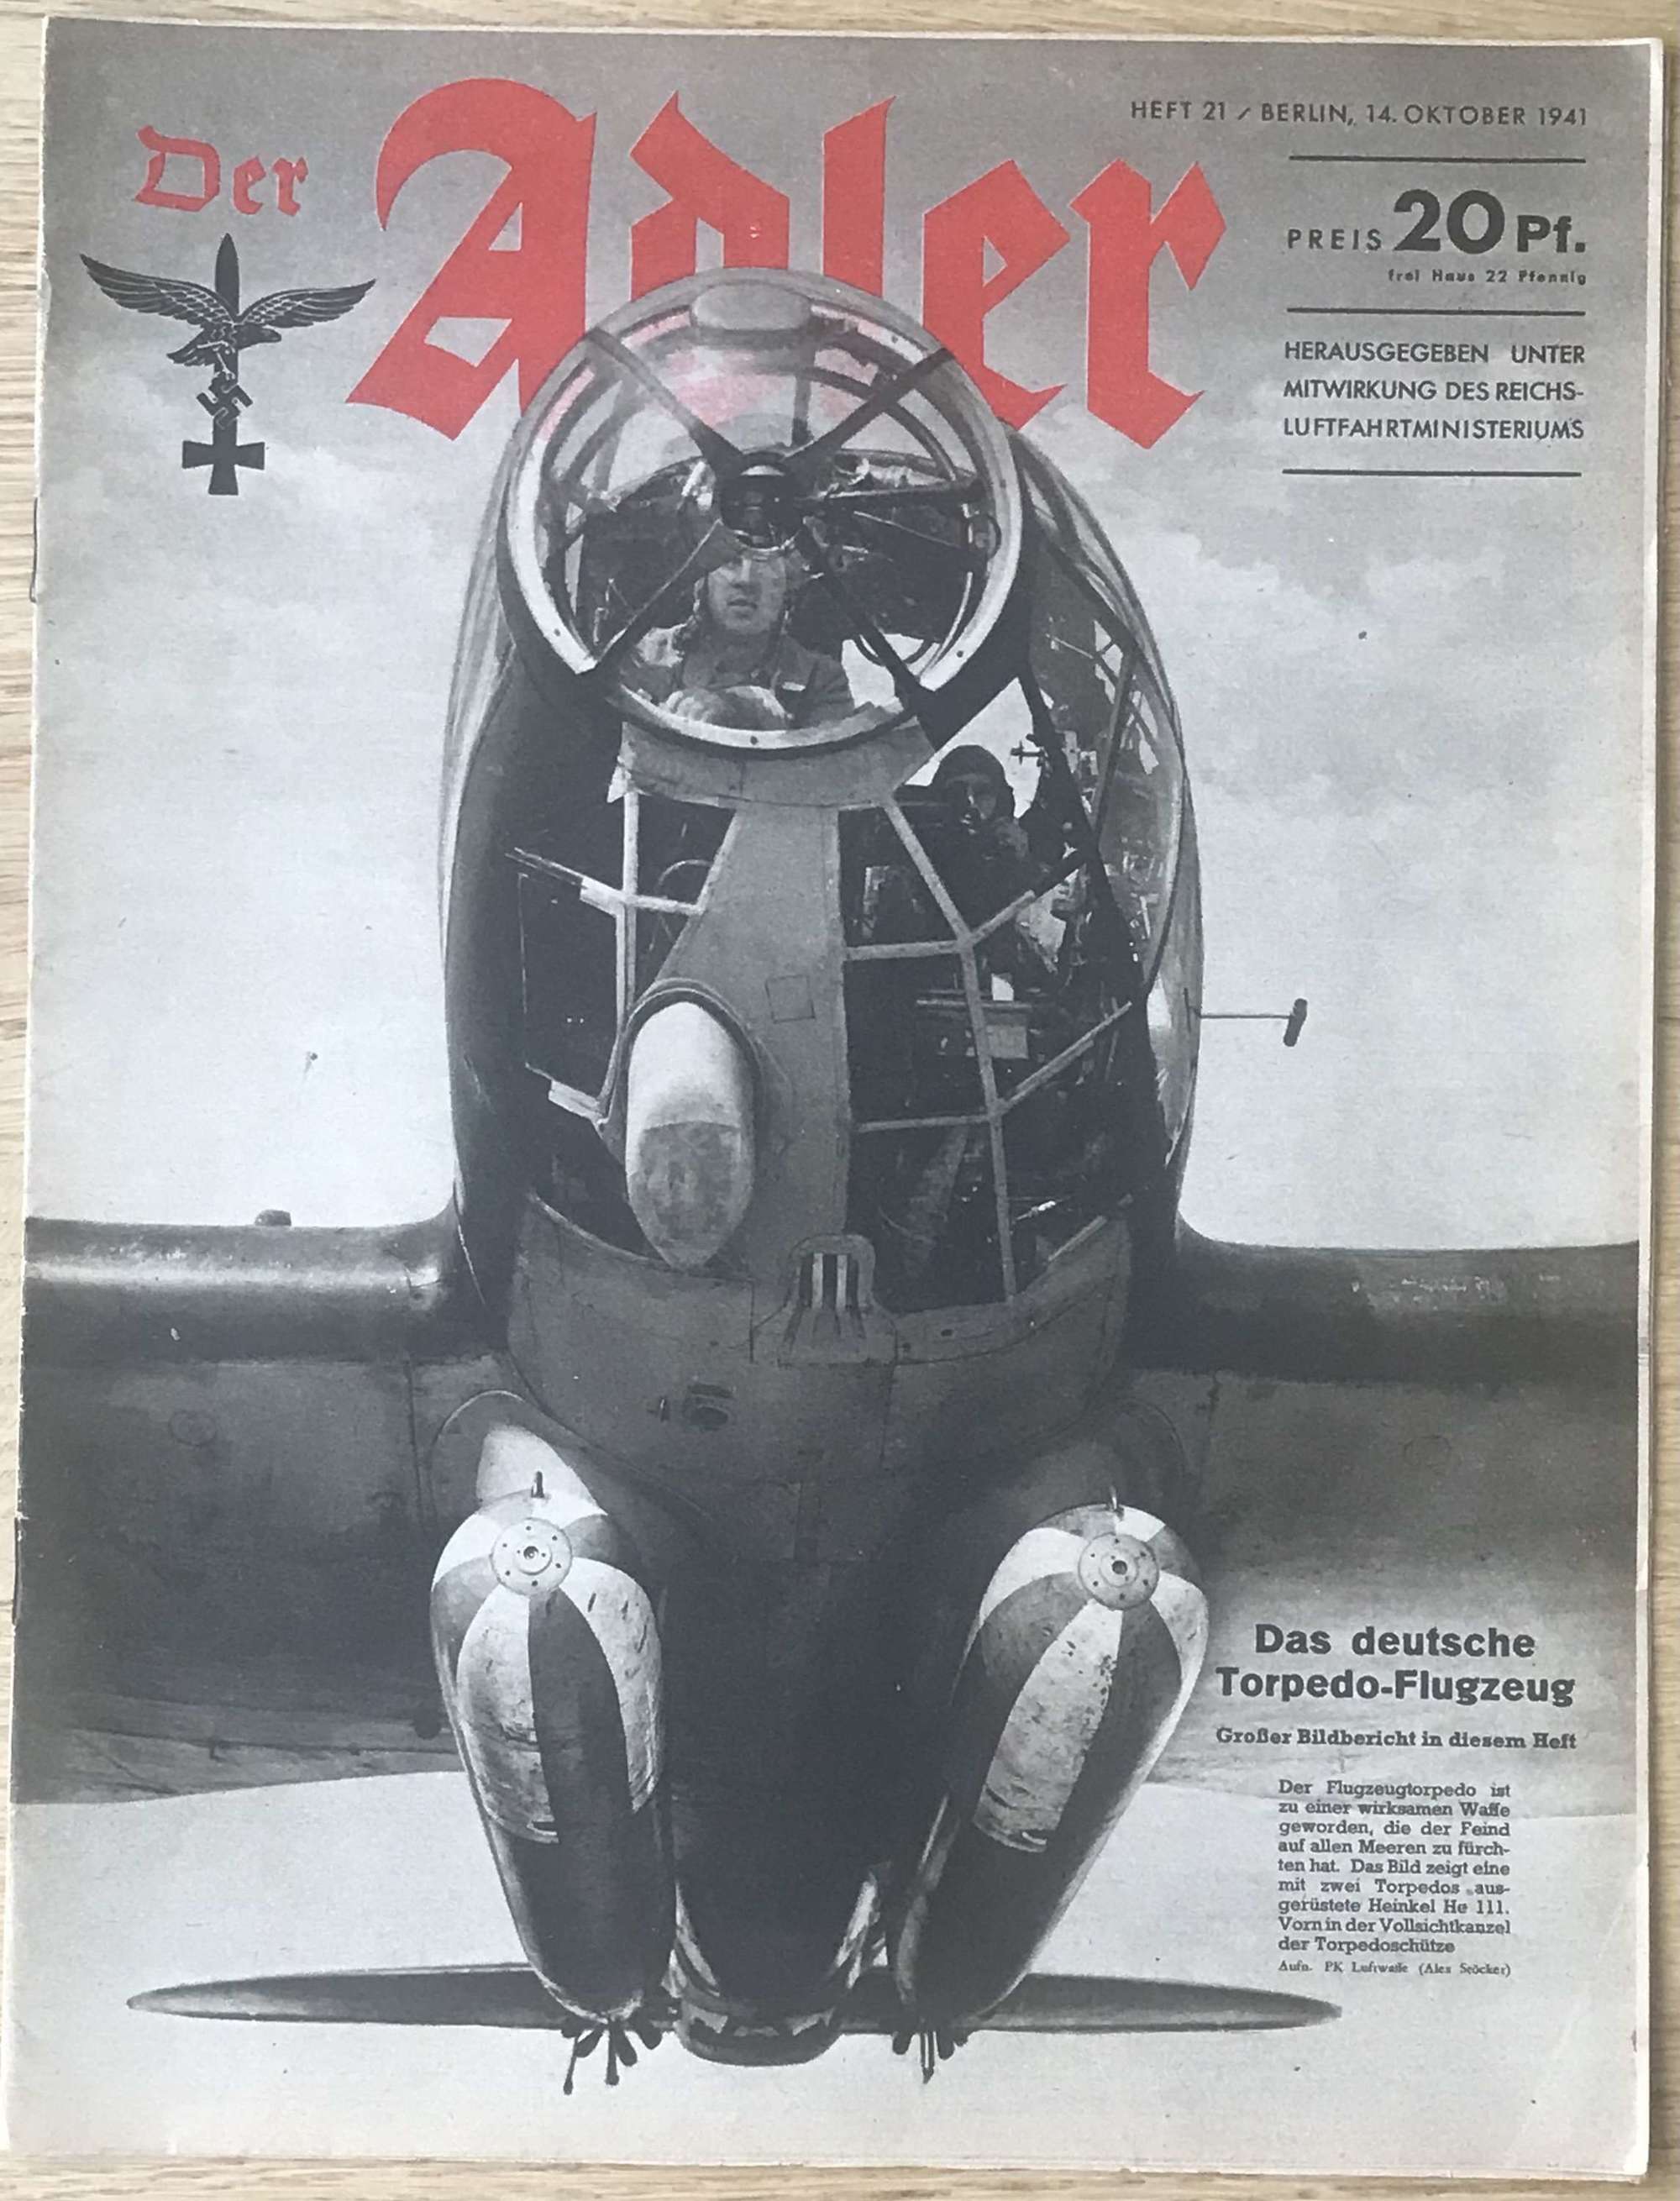 Luftwaffe Alder magazine dated October 1941